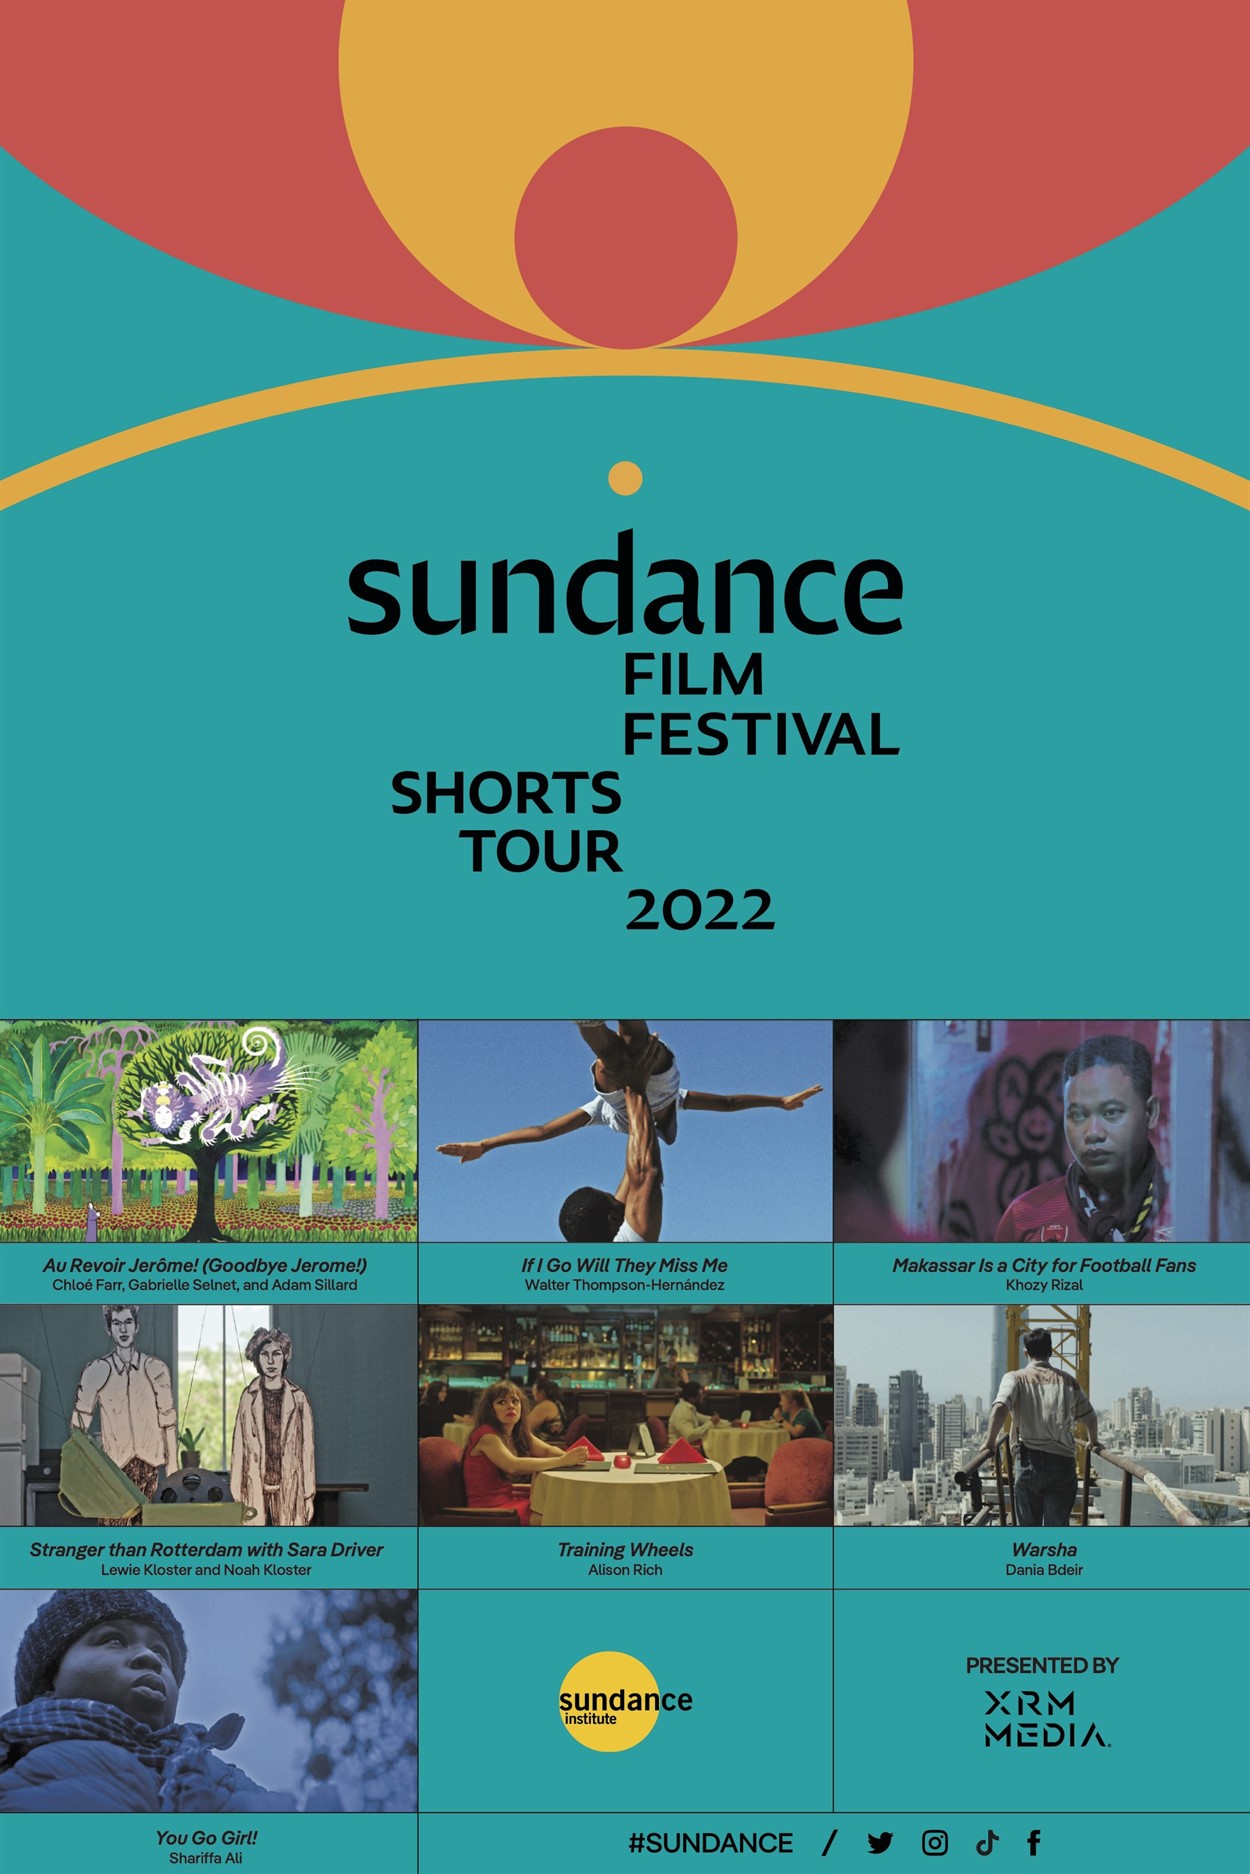 Sundance Film Festival Short Film Tour 2022